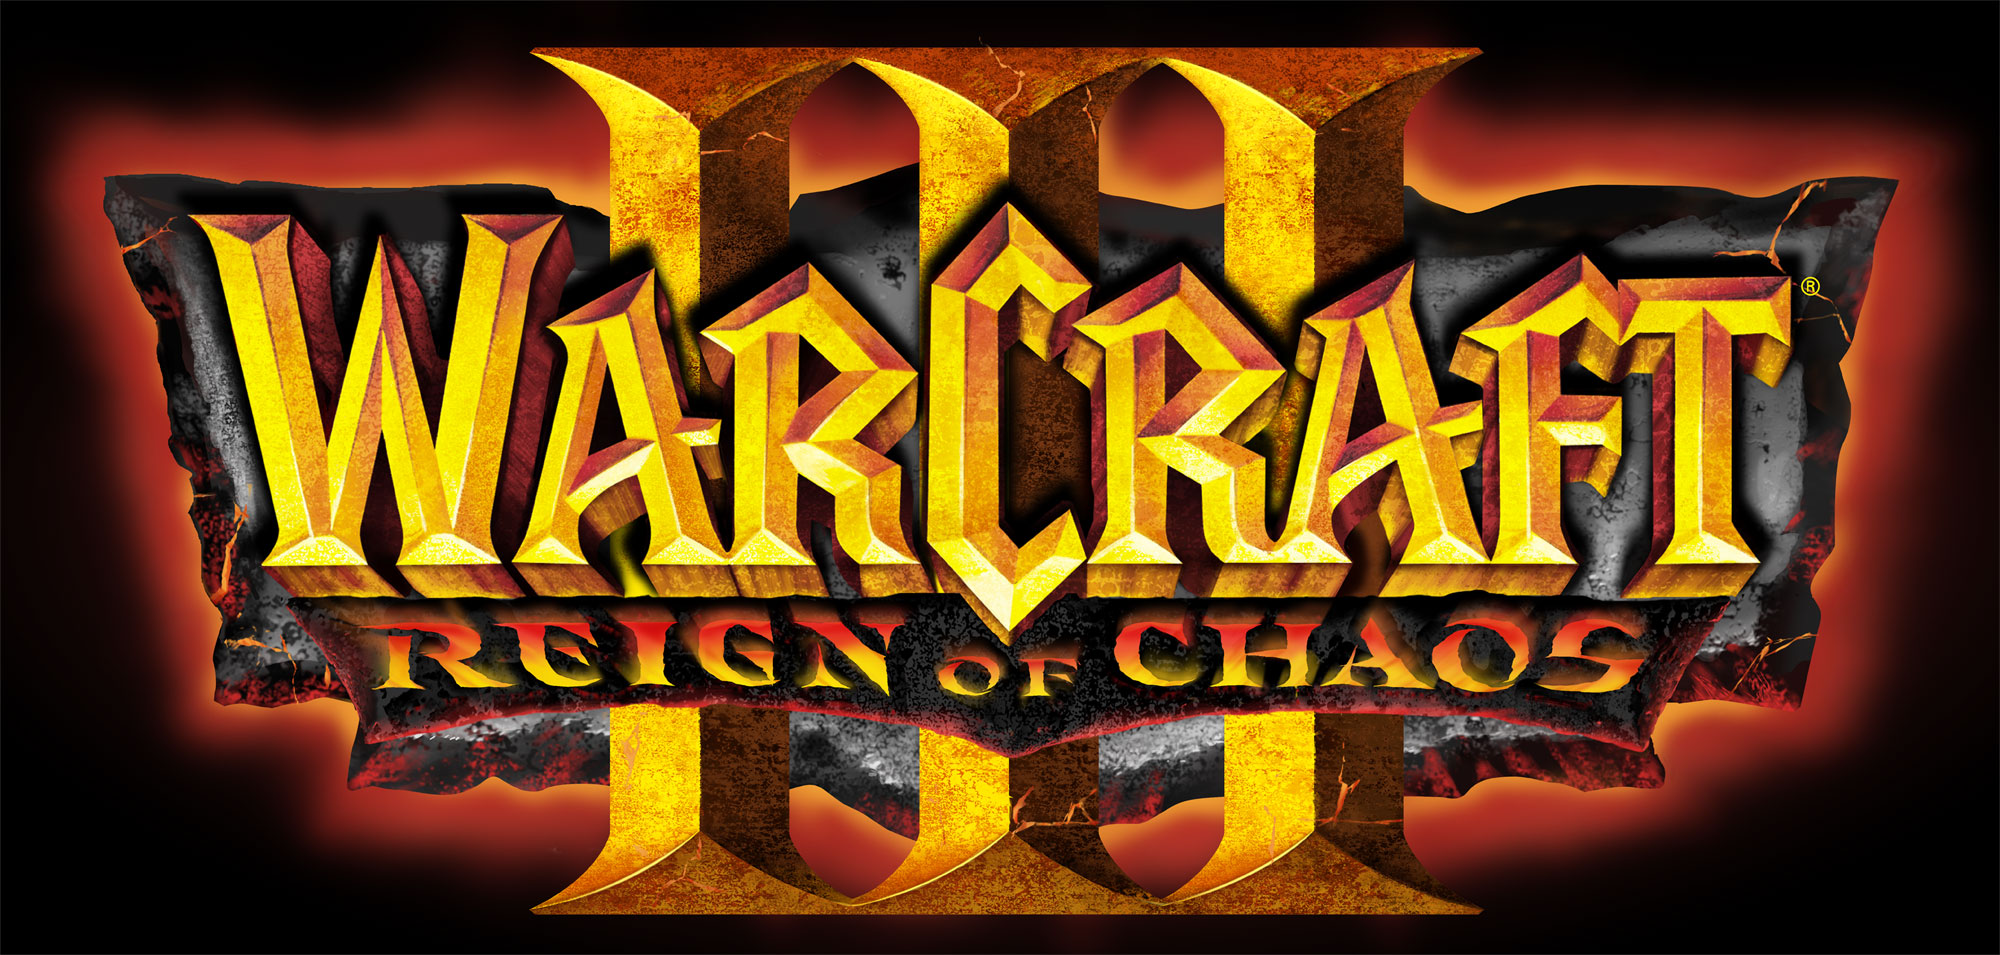 http://warcraft3.judgehype.com/screenshots/images/divers/WarcraftIII-logo2000.jpg